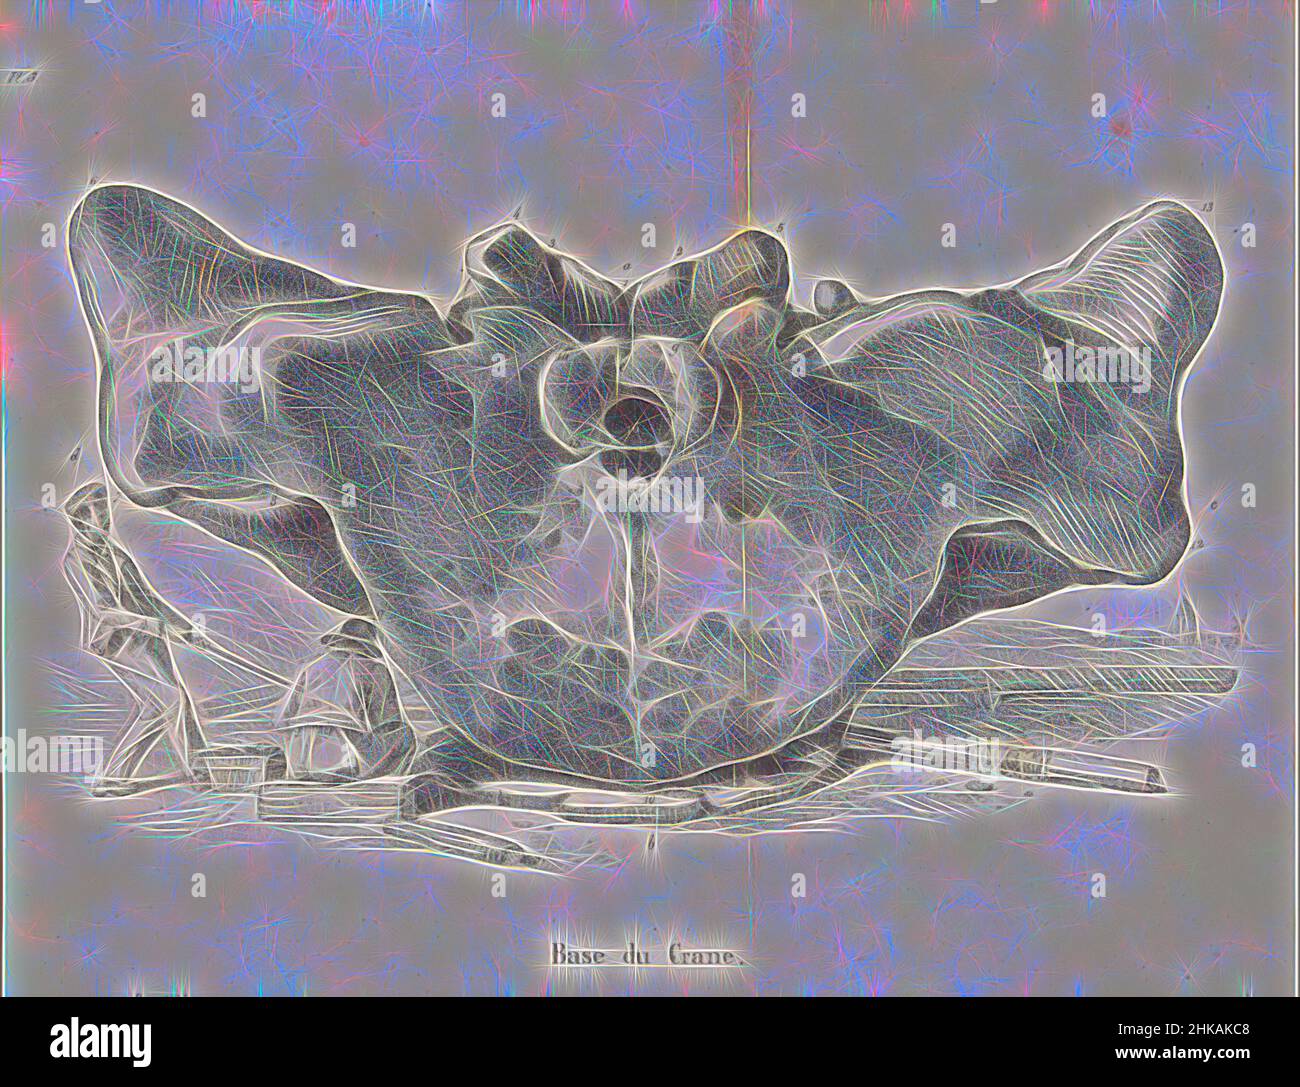 Base de ballena fotografías e imágenes de alta resolución - Alamy